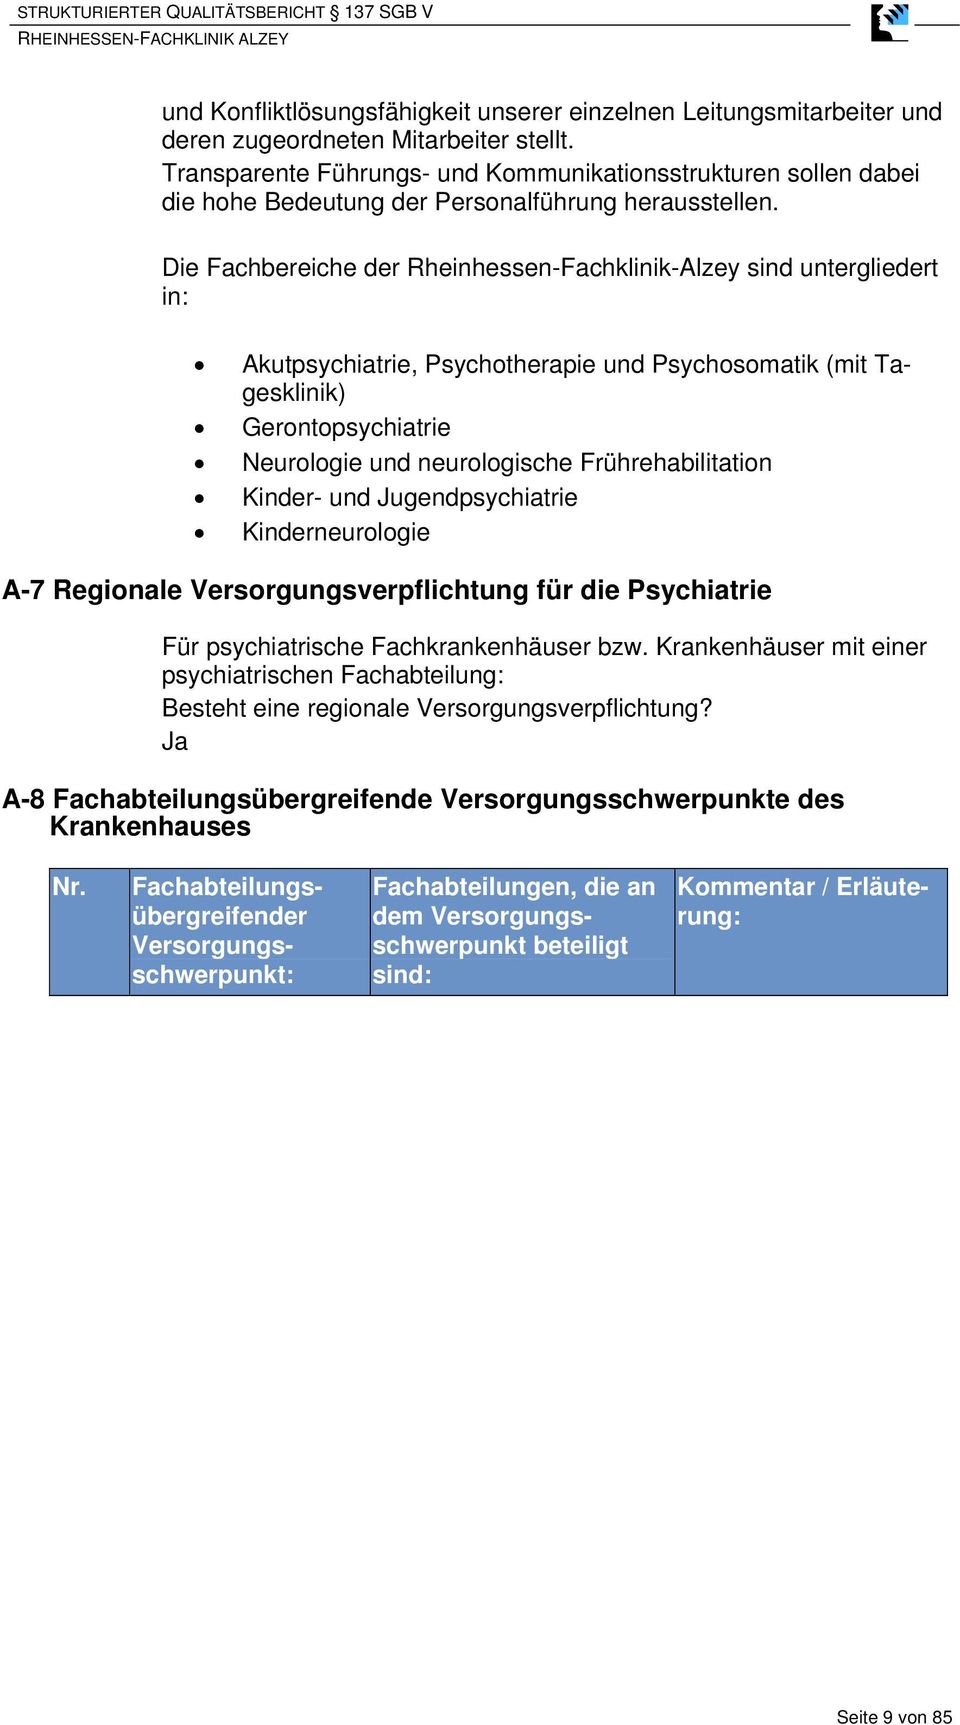 Die Fachbereiche der Rheinhessen-Fachklinik-Alzey sind untergliedert in: Akutpsychiatrie, Psychotherapie und Psychosomatik (mit Tagesklinik) Gerontopsychiatrie Neurologie und neurologische